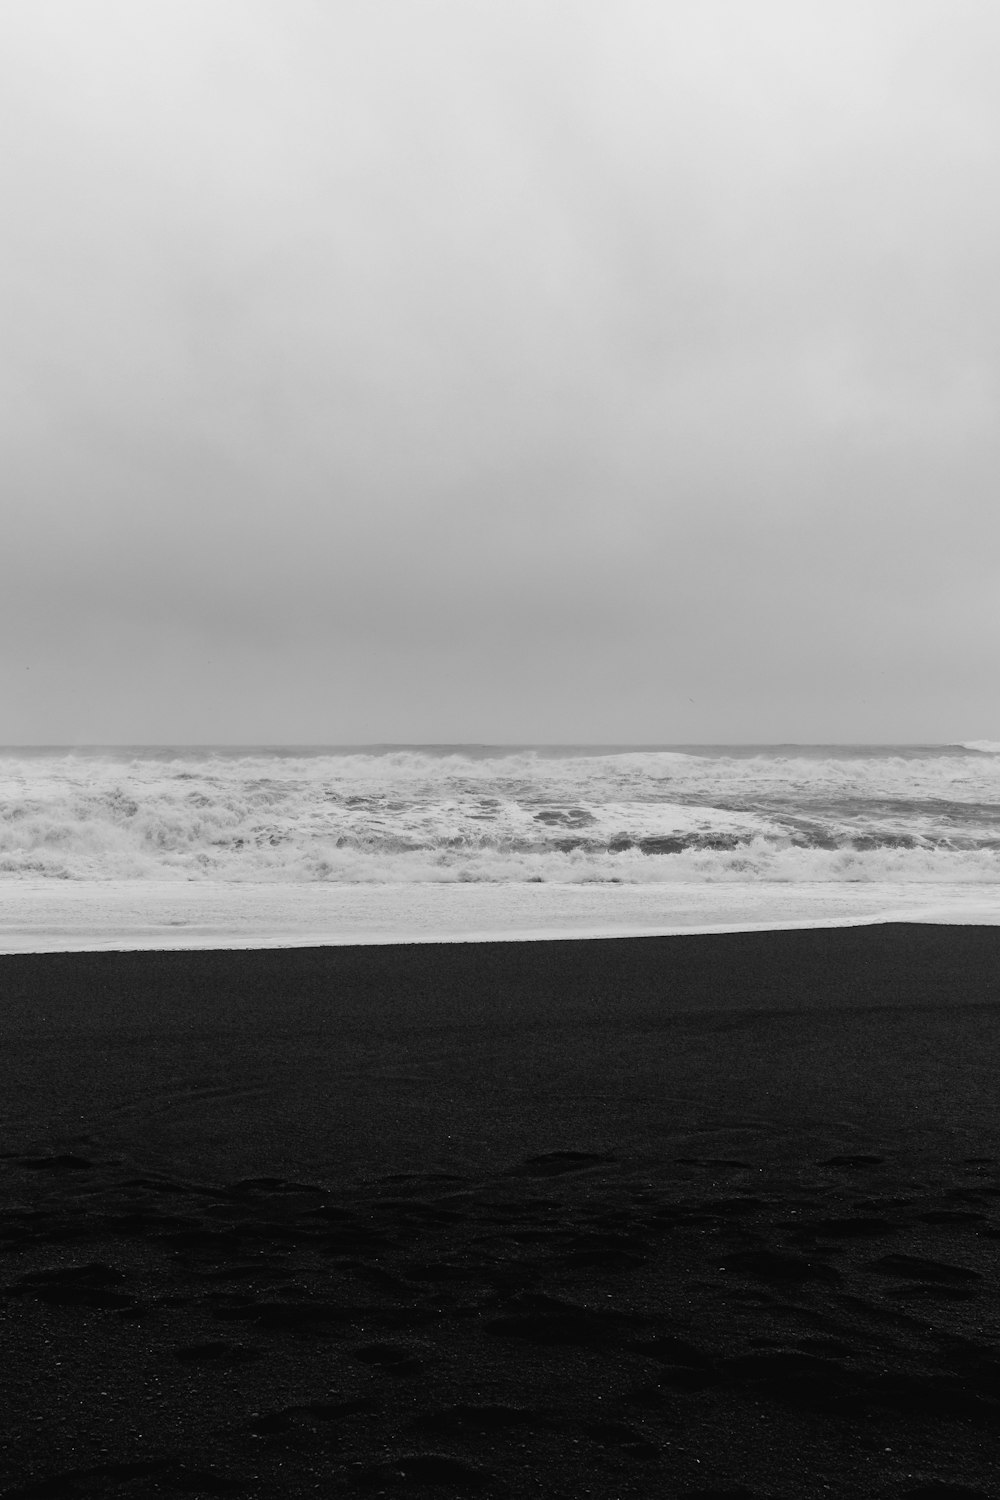 Una foto en blanco y negro de una persona que lleva una tabla de surf